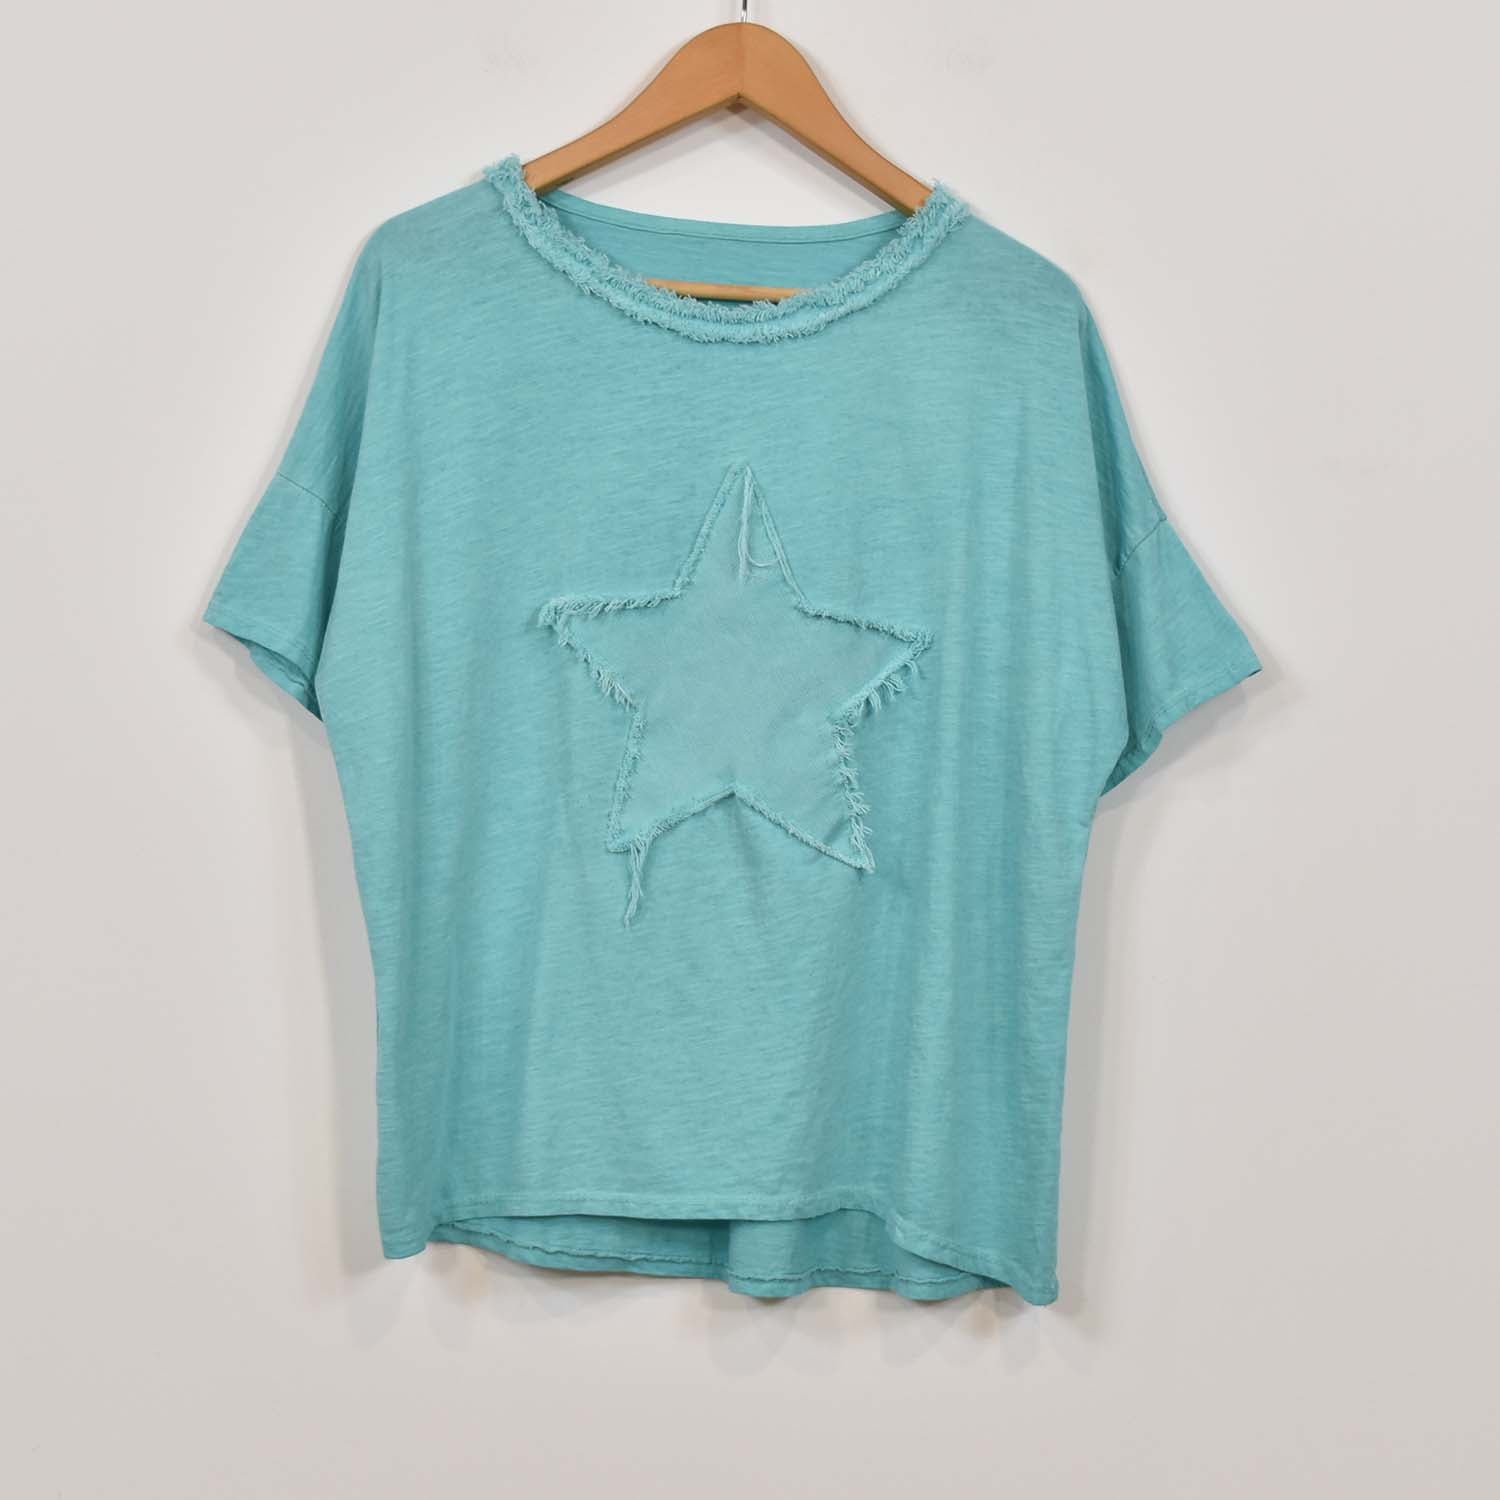 T-shirt à étoiles frangées turquoise